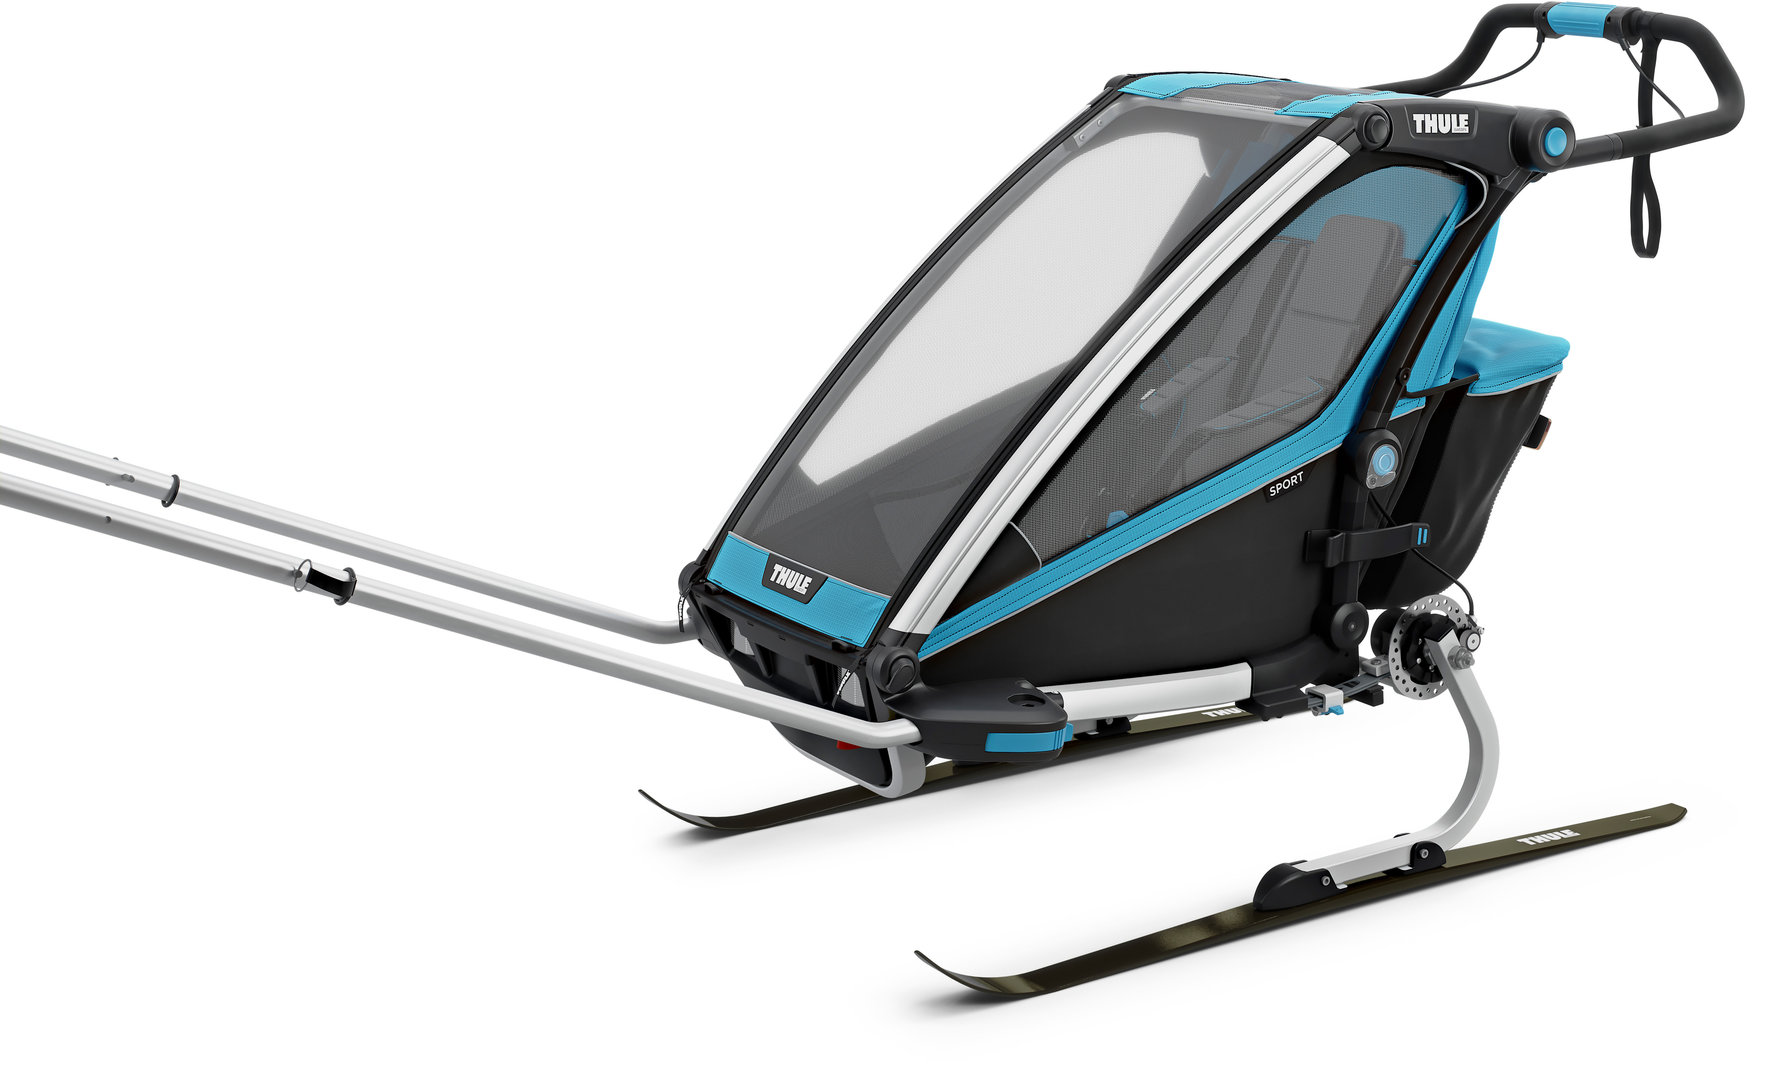 thule chariot cross 2 ski kit